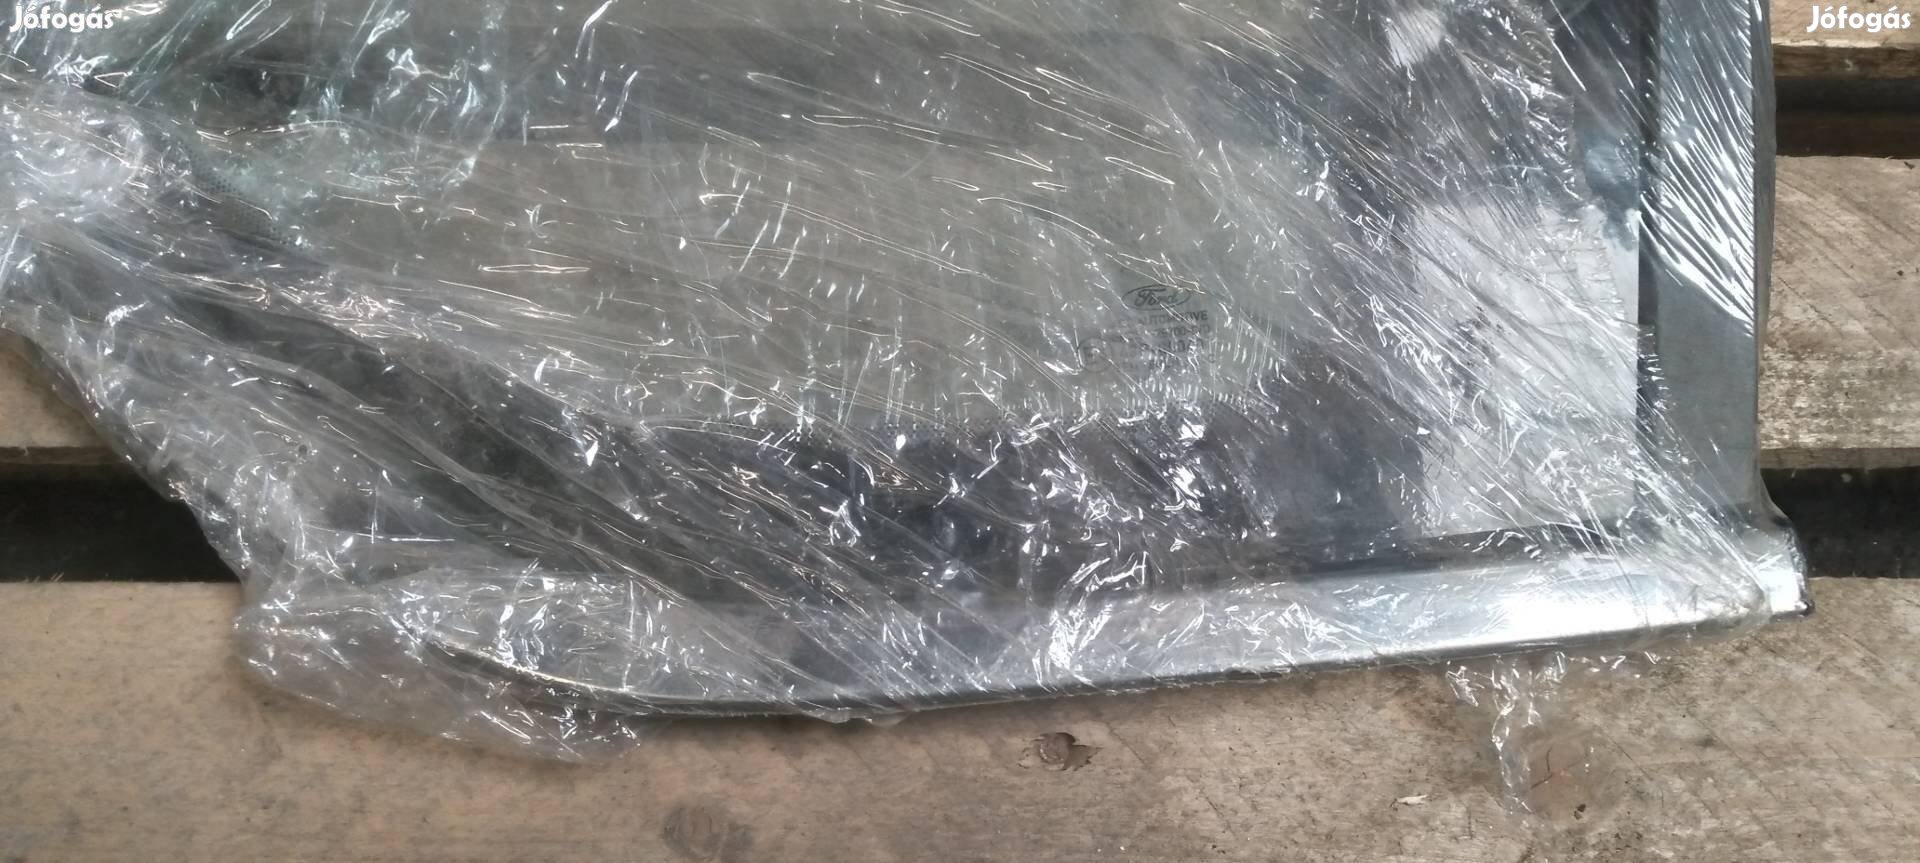 Eladó Ford S-Max hátsó oldalüveg üveg fix 2014-től